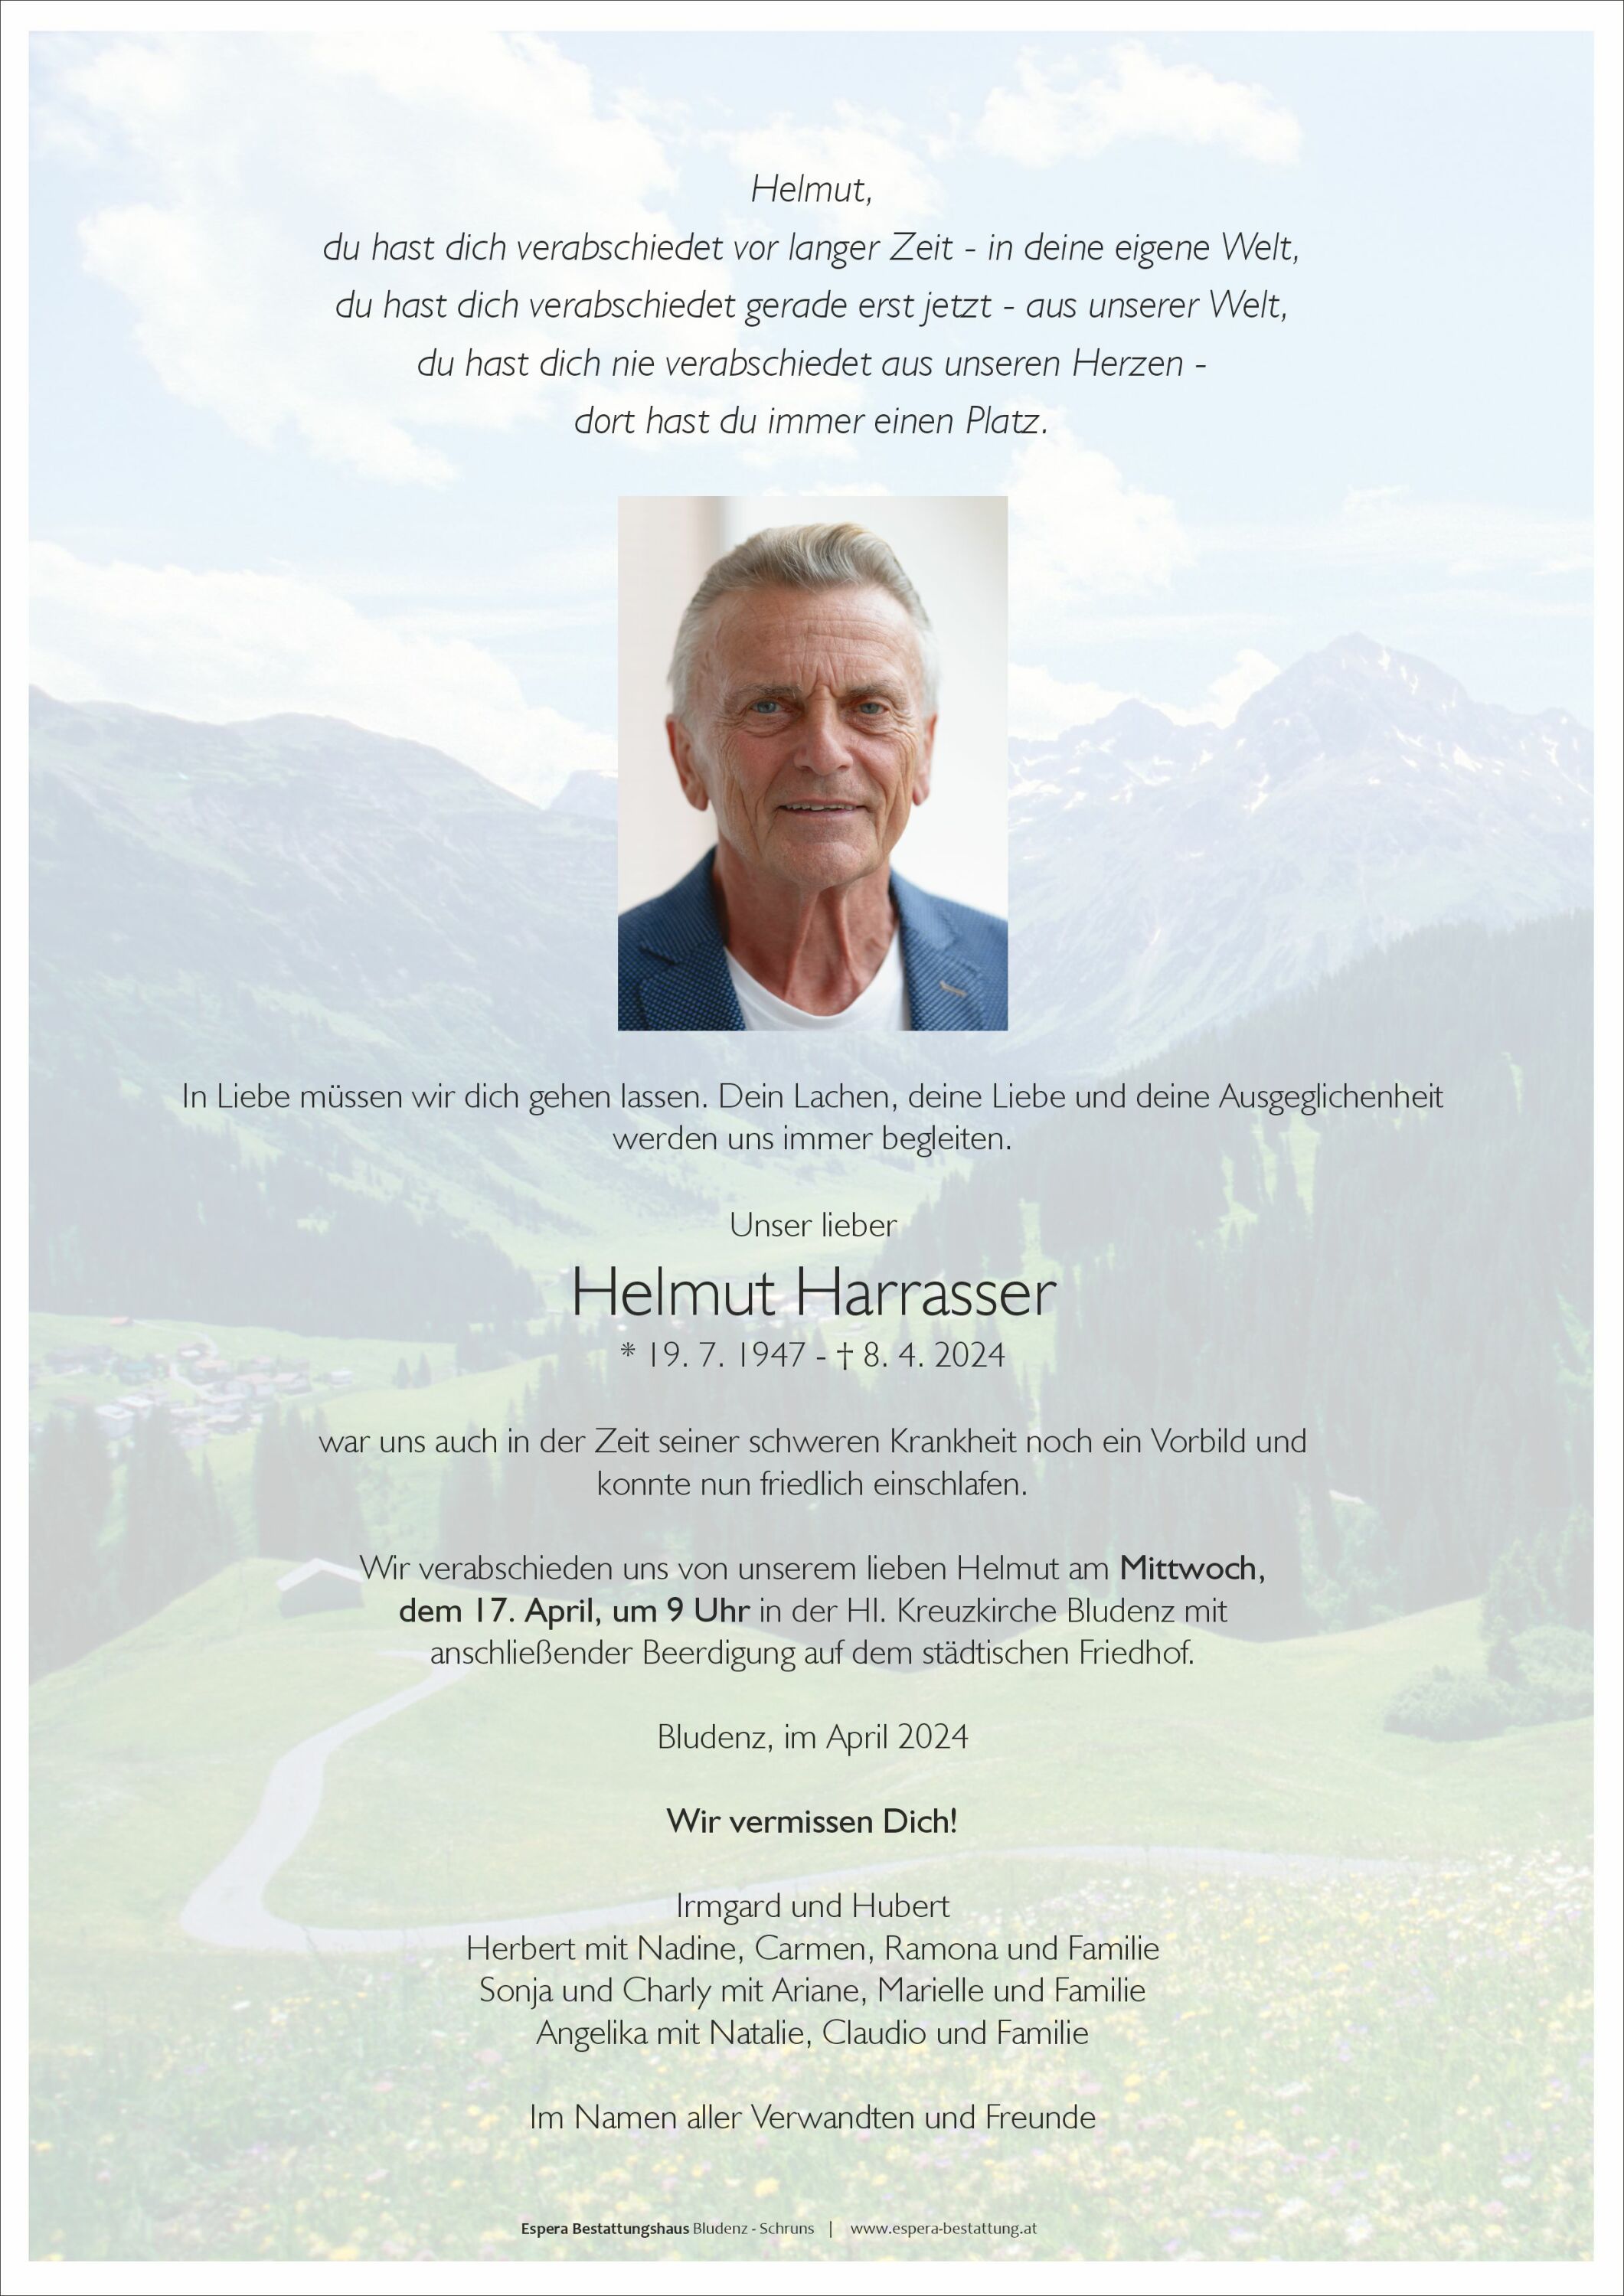 Helmut Harrasser